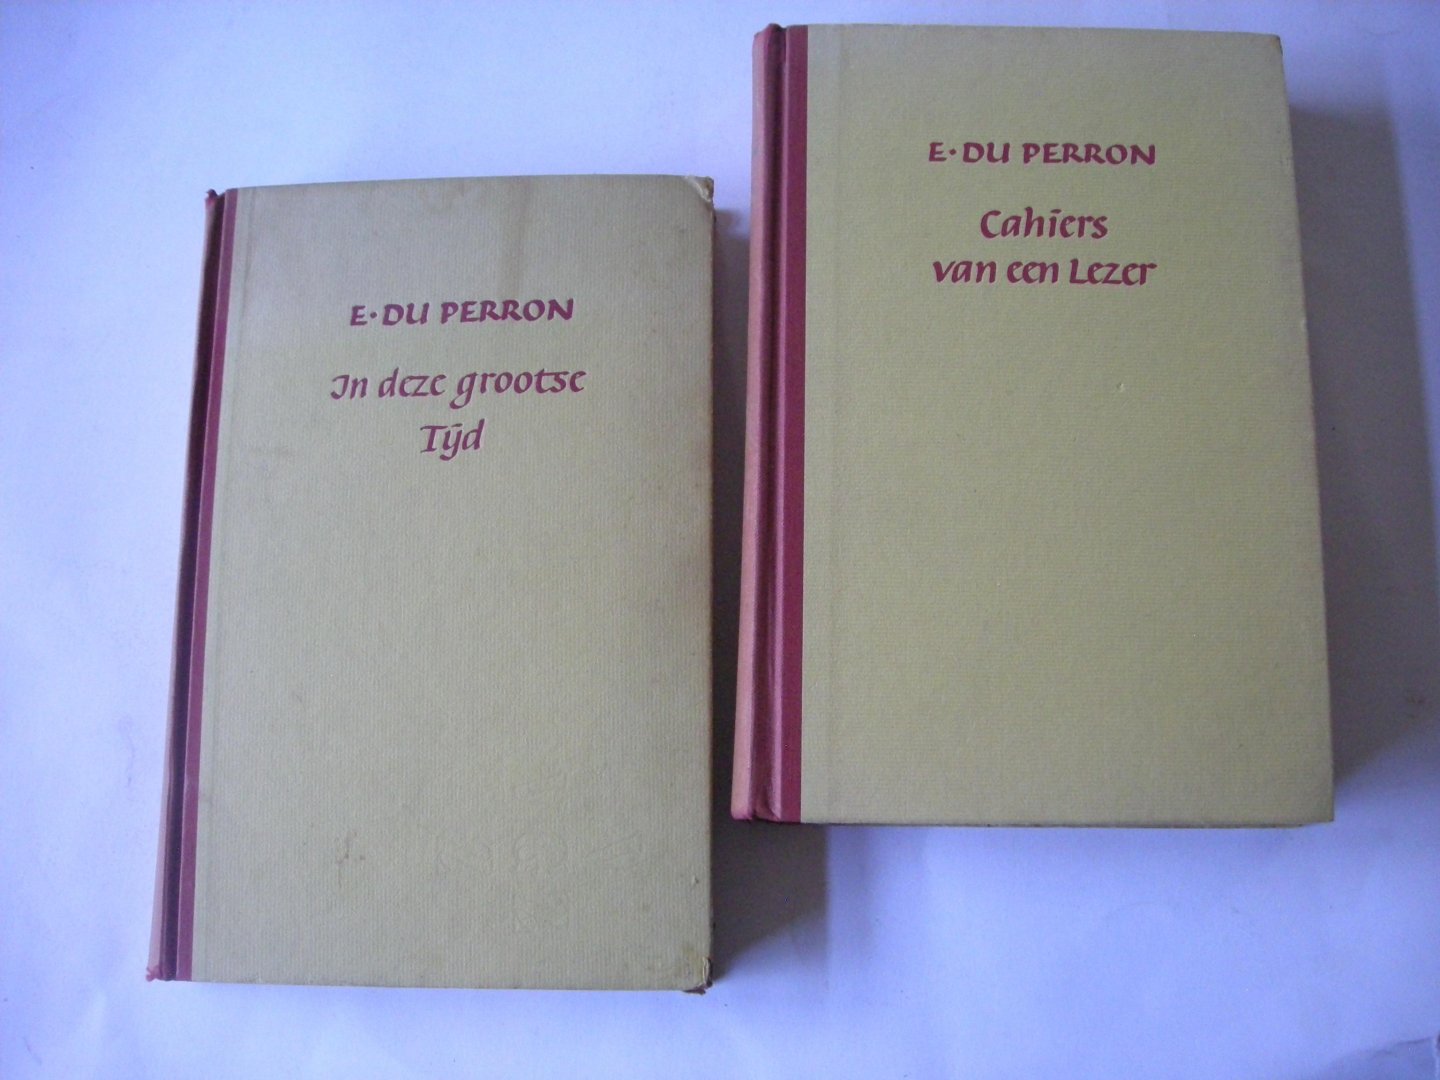 Perron, E.du - Cahiers van een Lezer, gevolgd door Uren met Dirk Coster